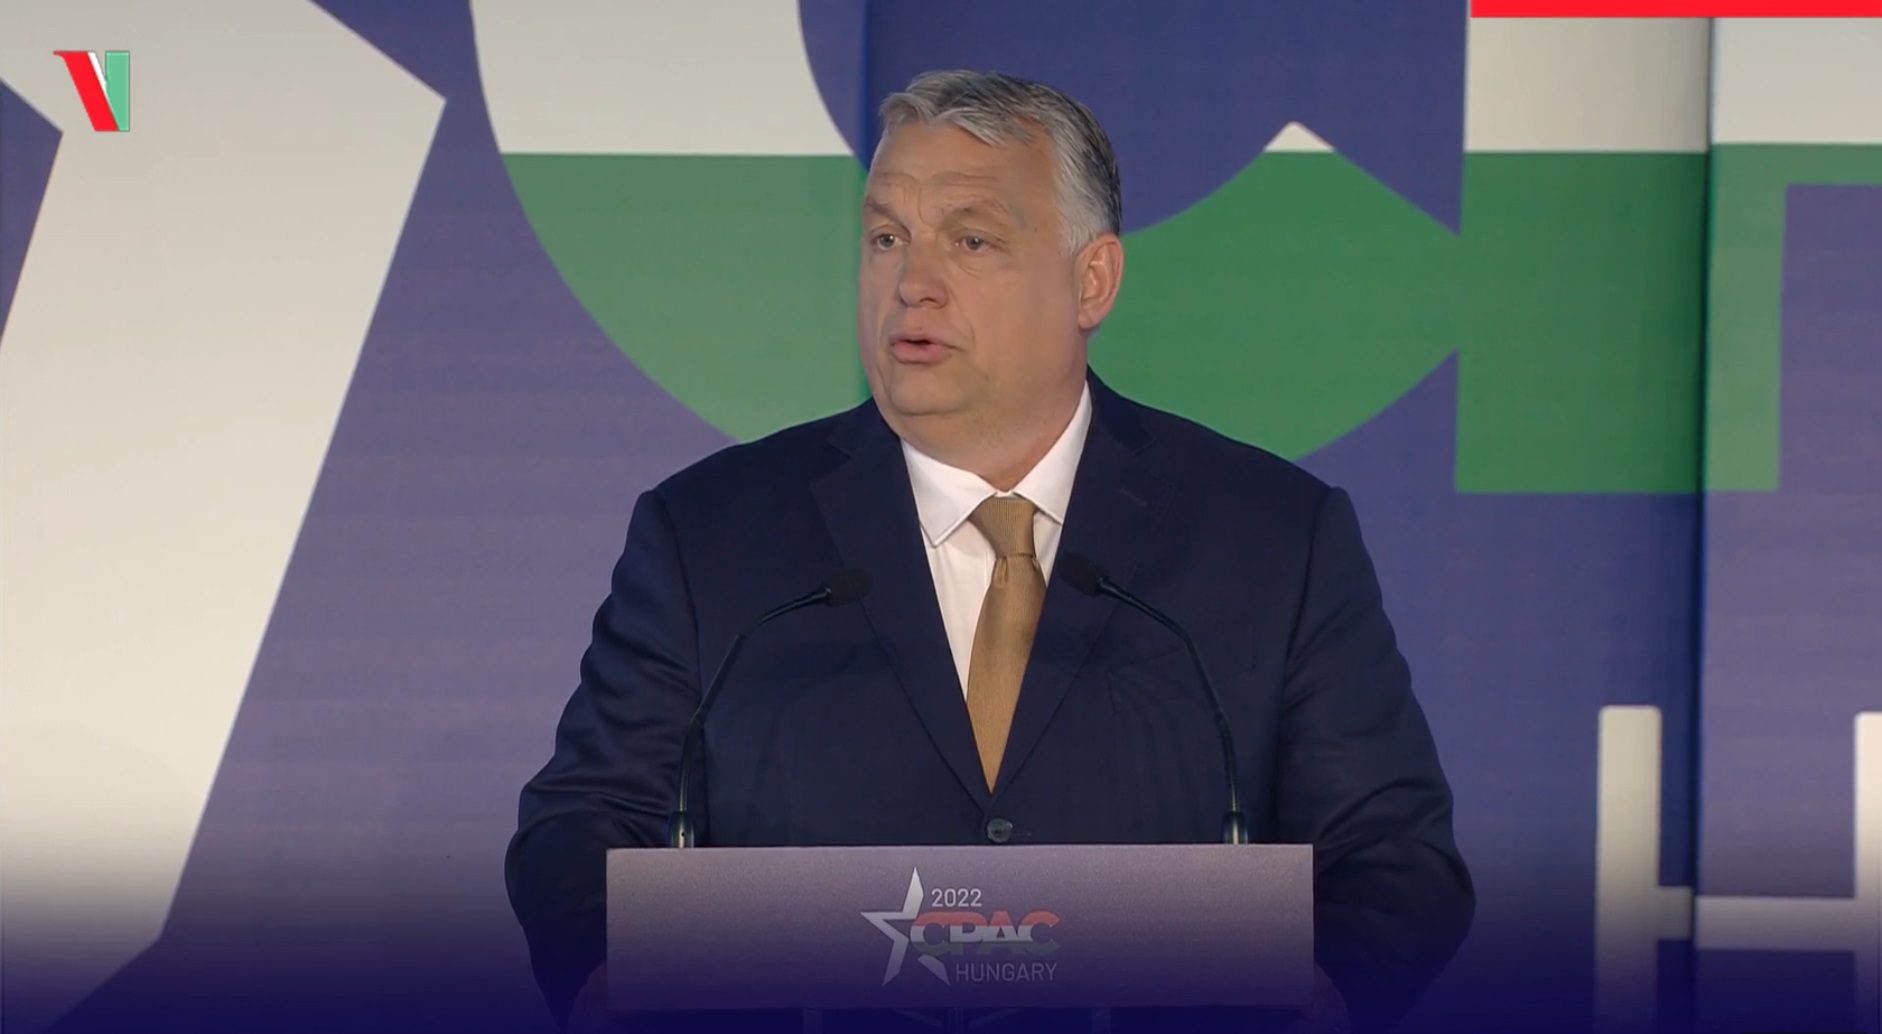 Viktor Orbán au CPAC 2022